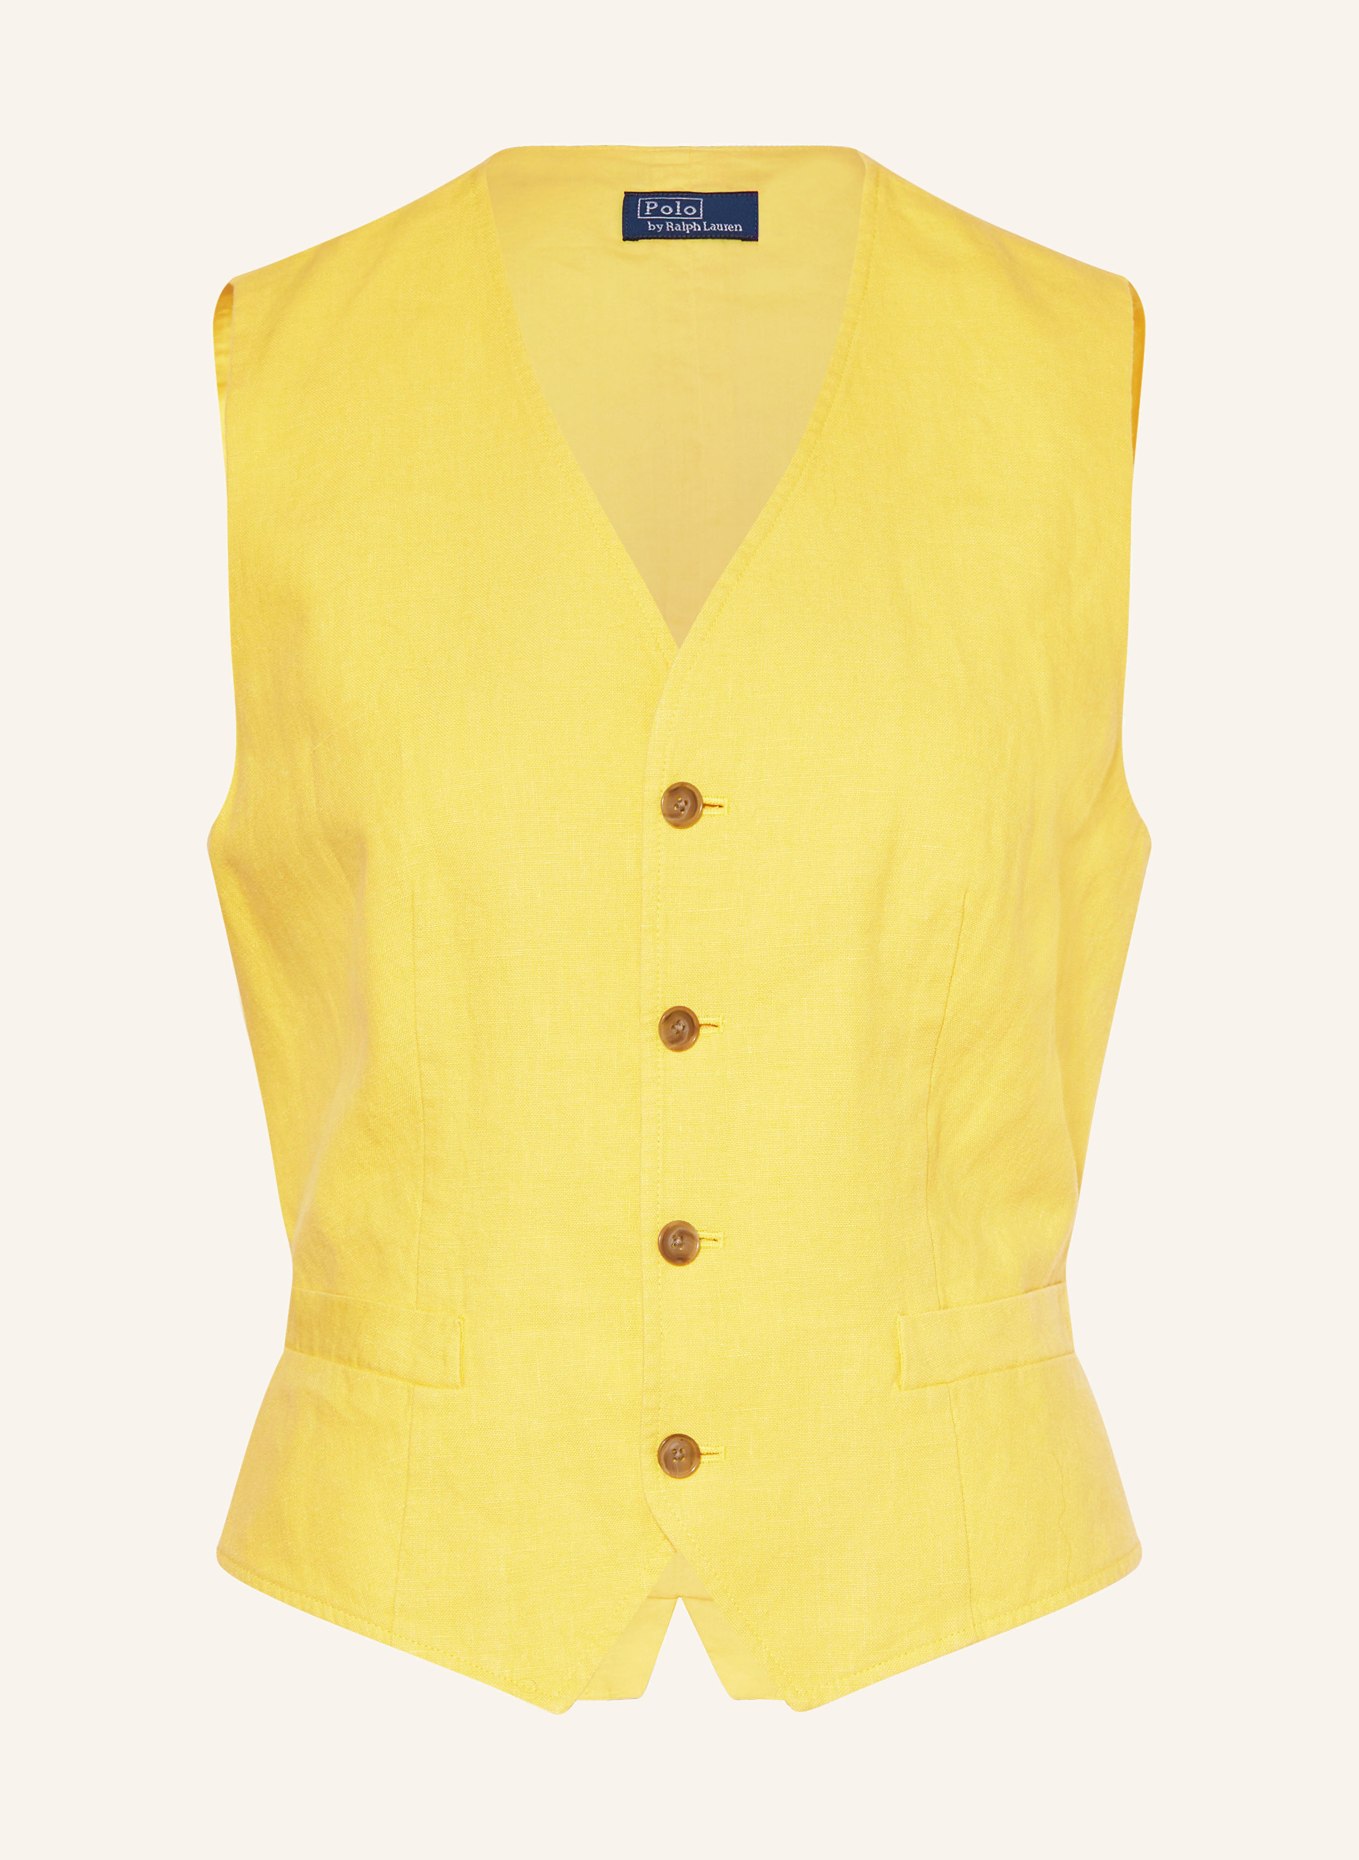 POLO RALPH LAUREN Vest, Color: YELLOW (Image 1)